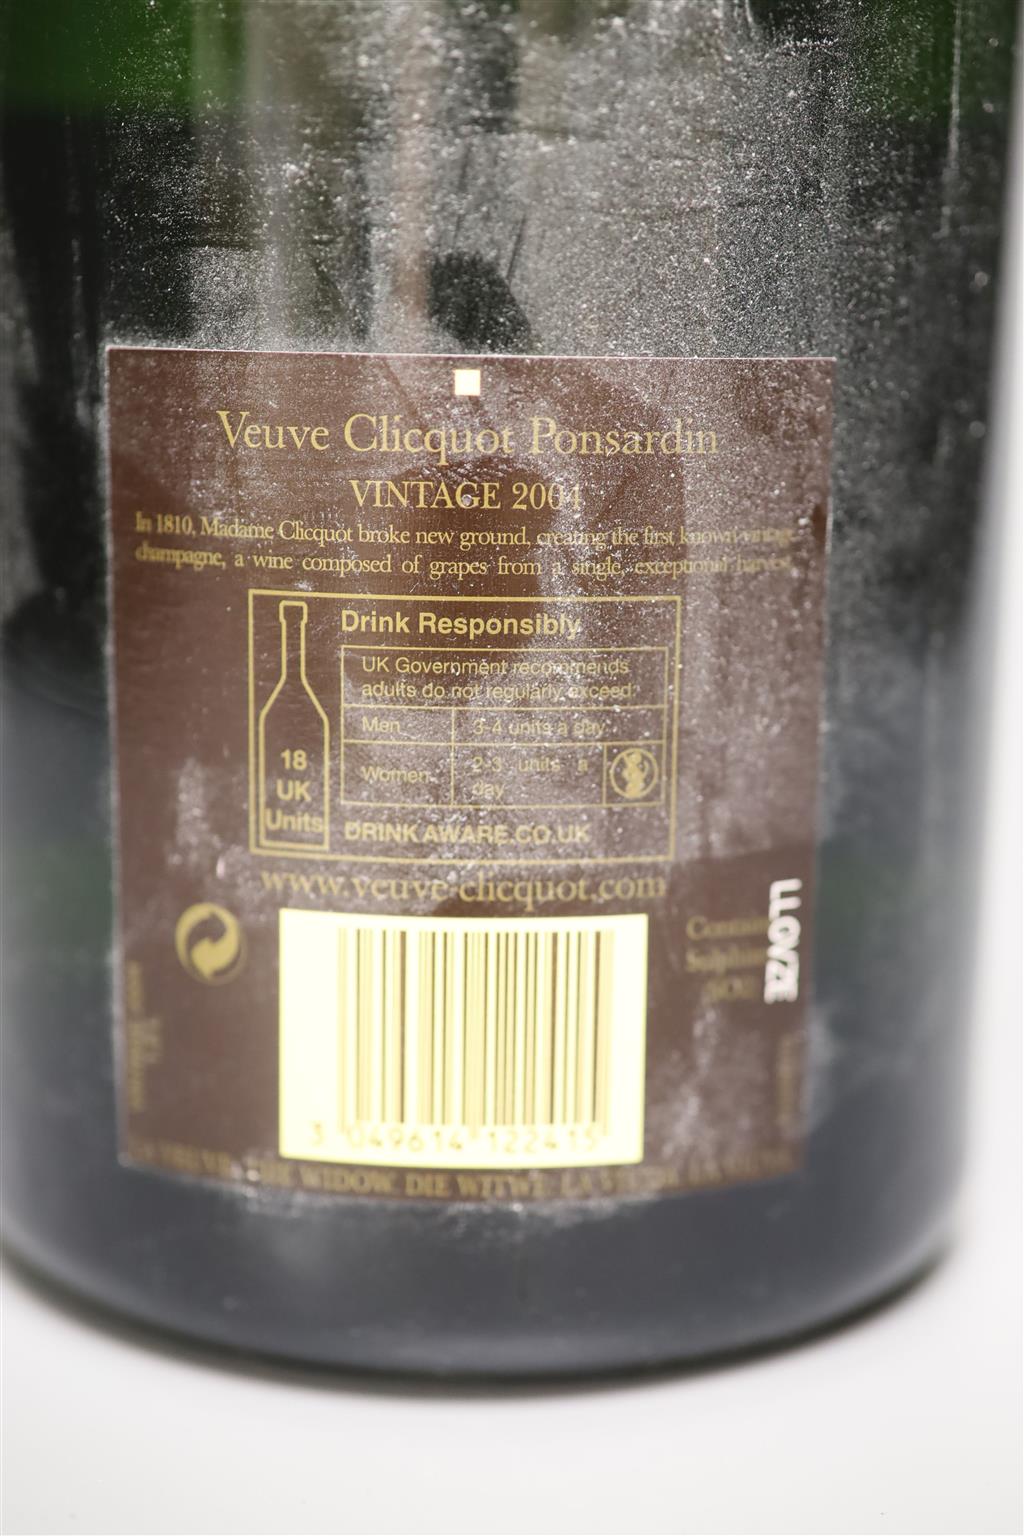 A magnum of Veuve Cliquot-Ponsardin vintage 2004